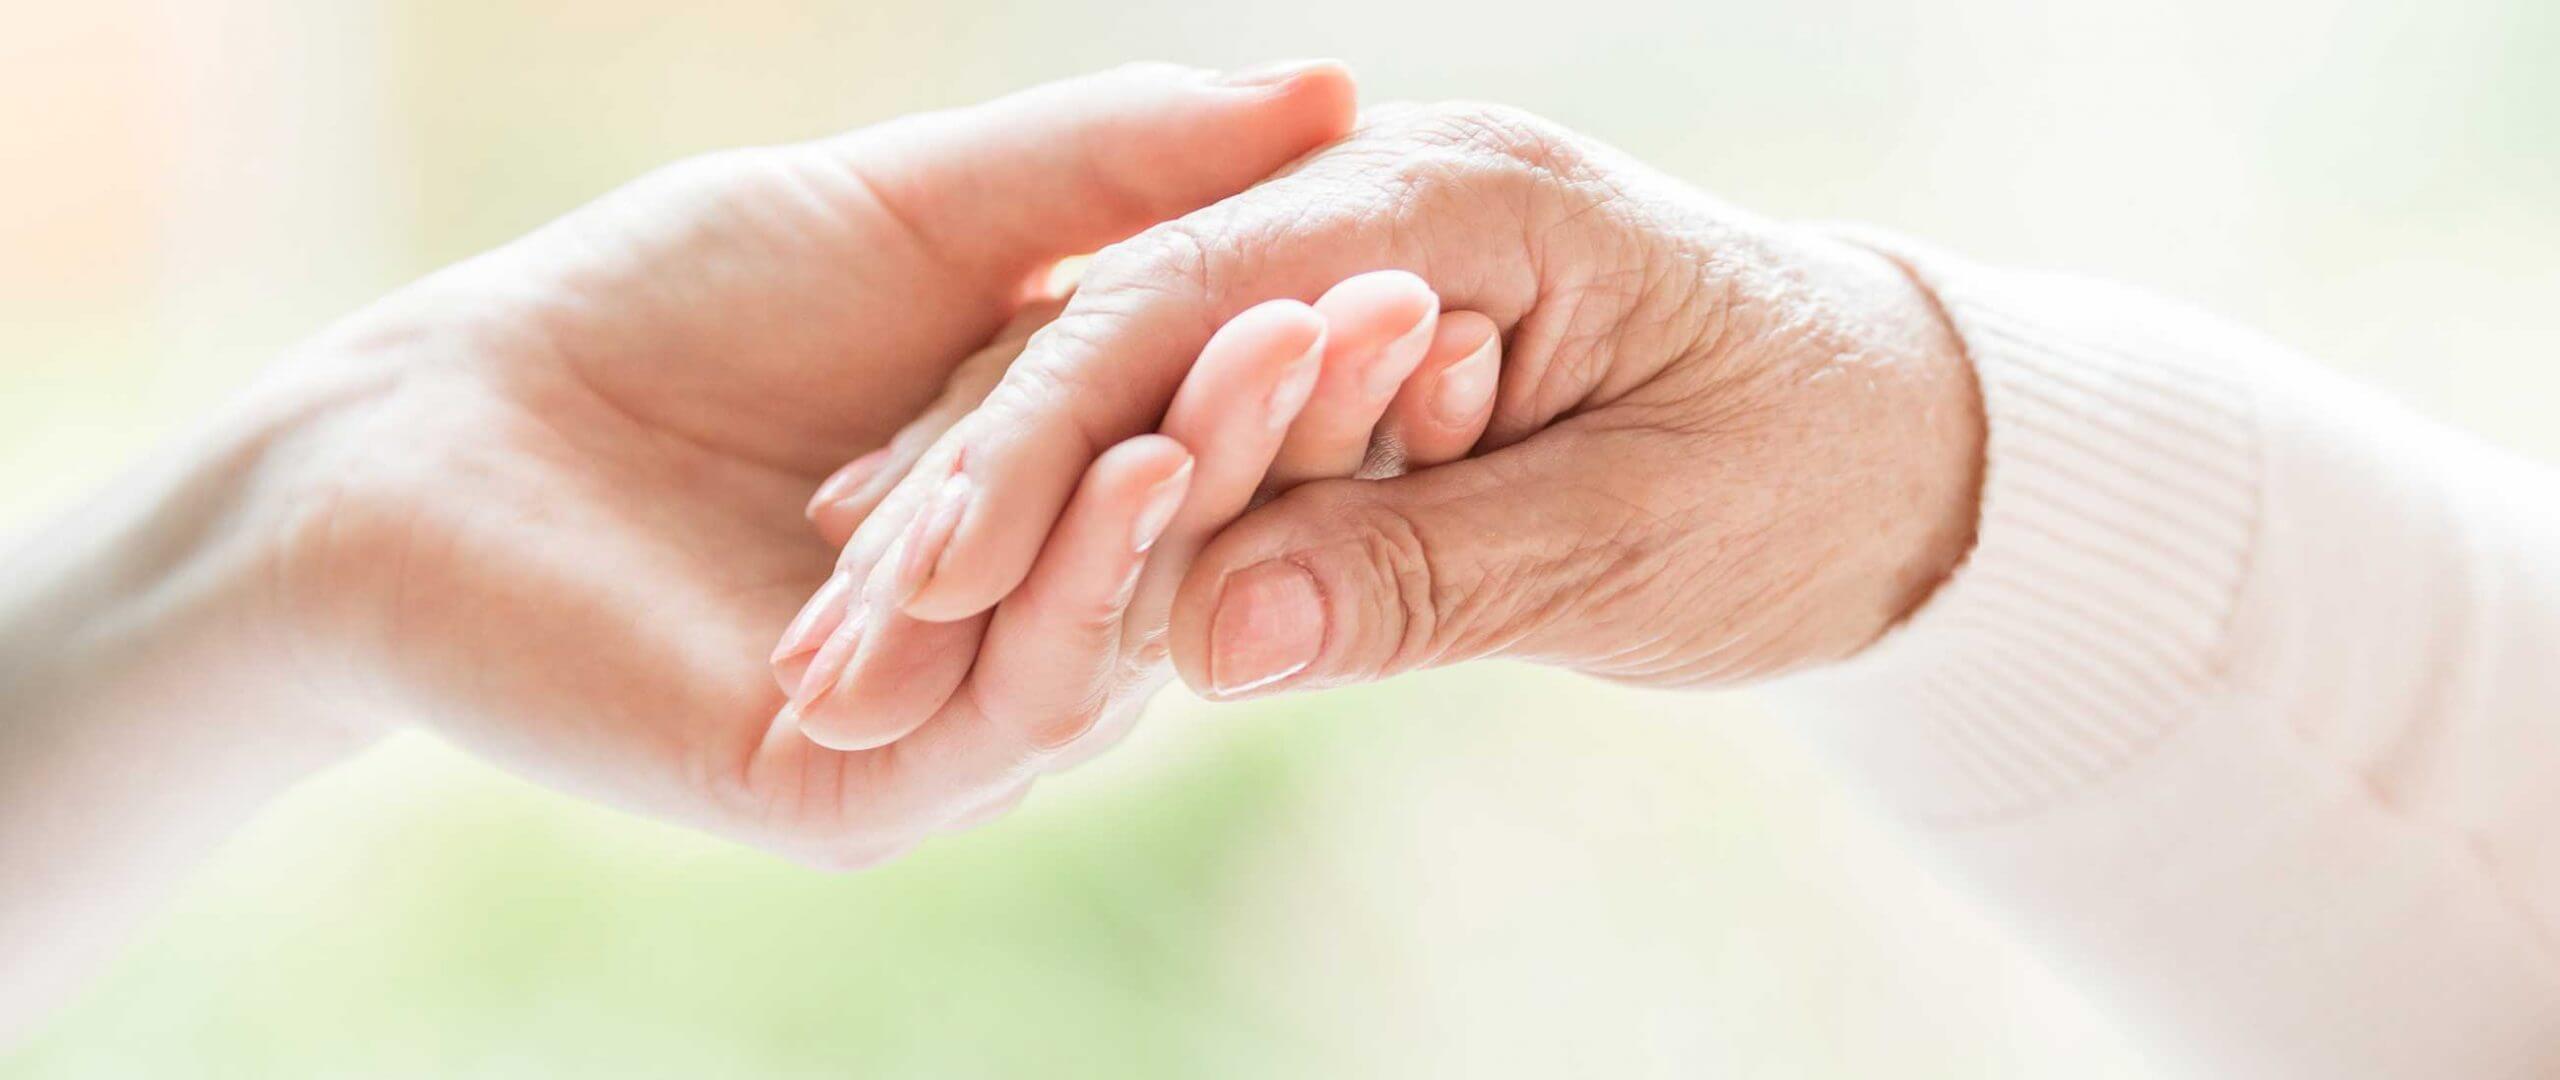 Forum Demenz | Palliativpflege | Wir begleiten Sie in der letzen Lebensphase